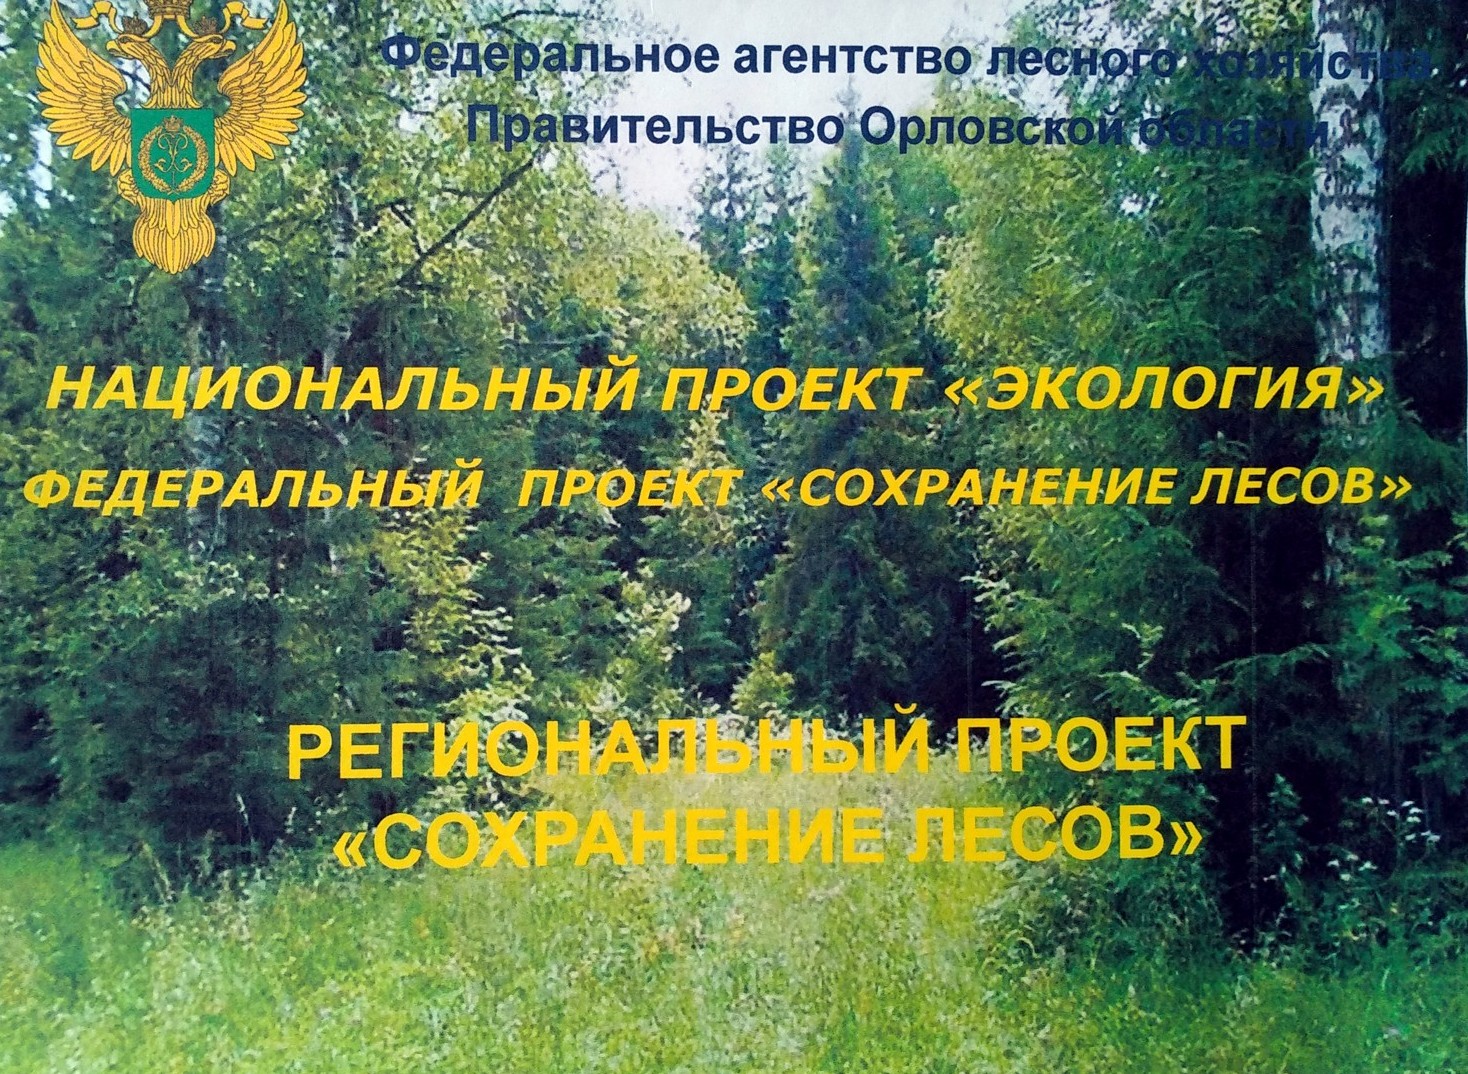 Охрана лесов в россии. Региональный проект сохранение лесов. Федеральный проект сохранение лесов. Нацпроект по сохранению лесов. Региональный проект сохранение лесов национального проекта экология.